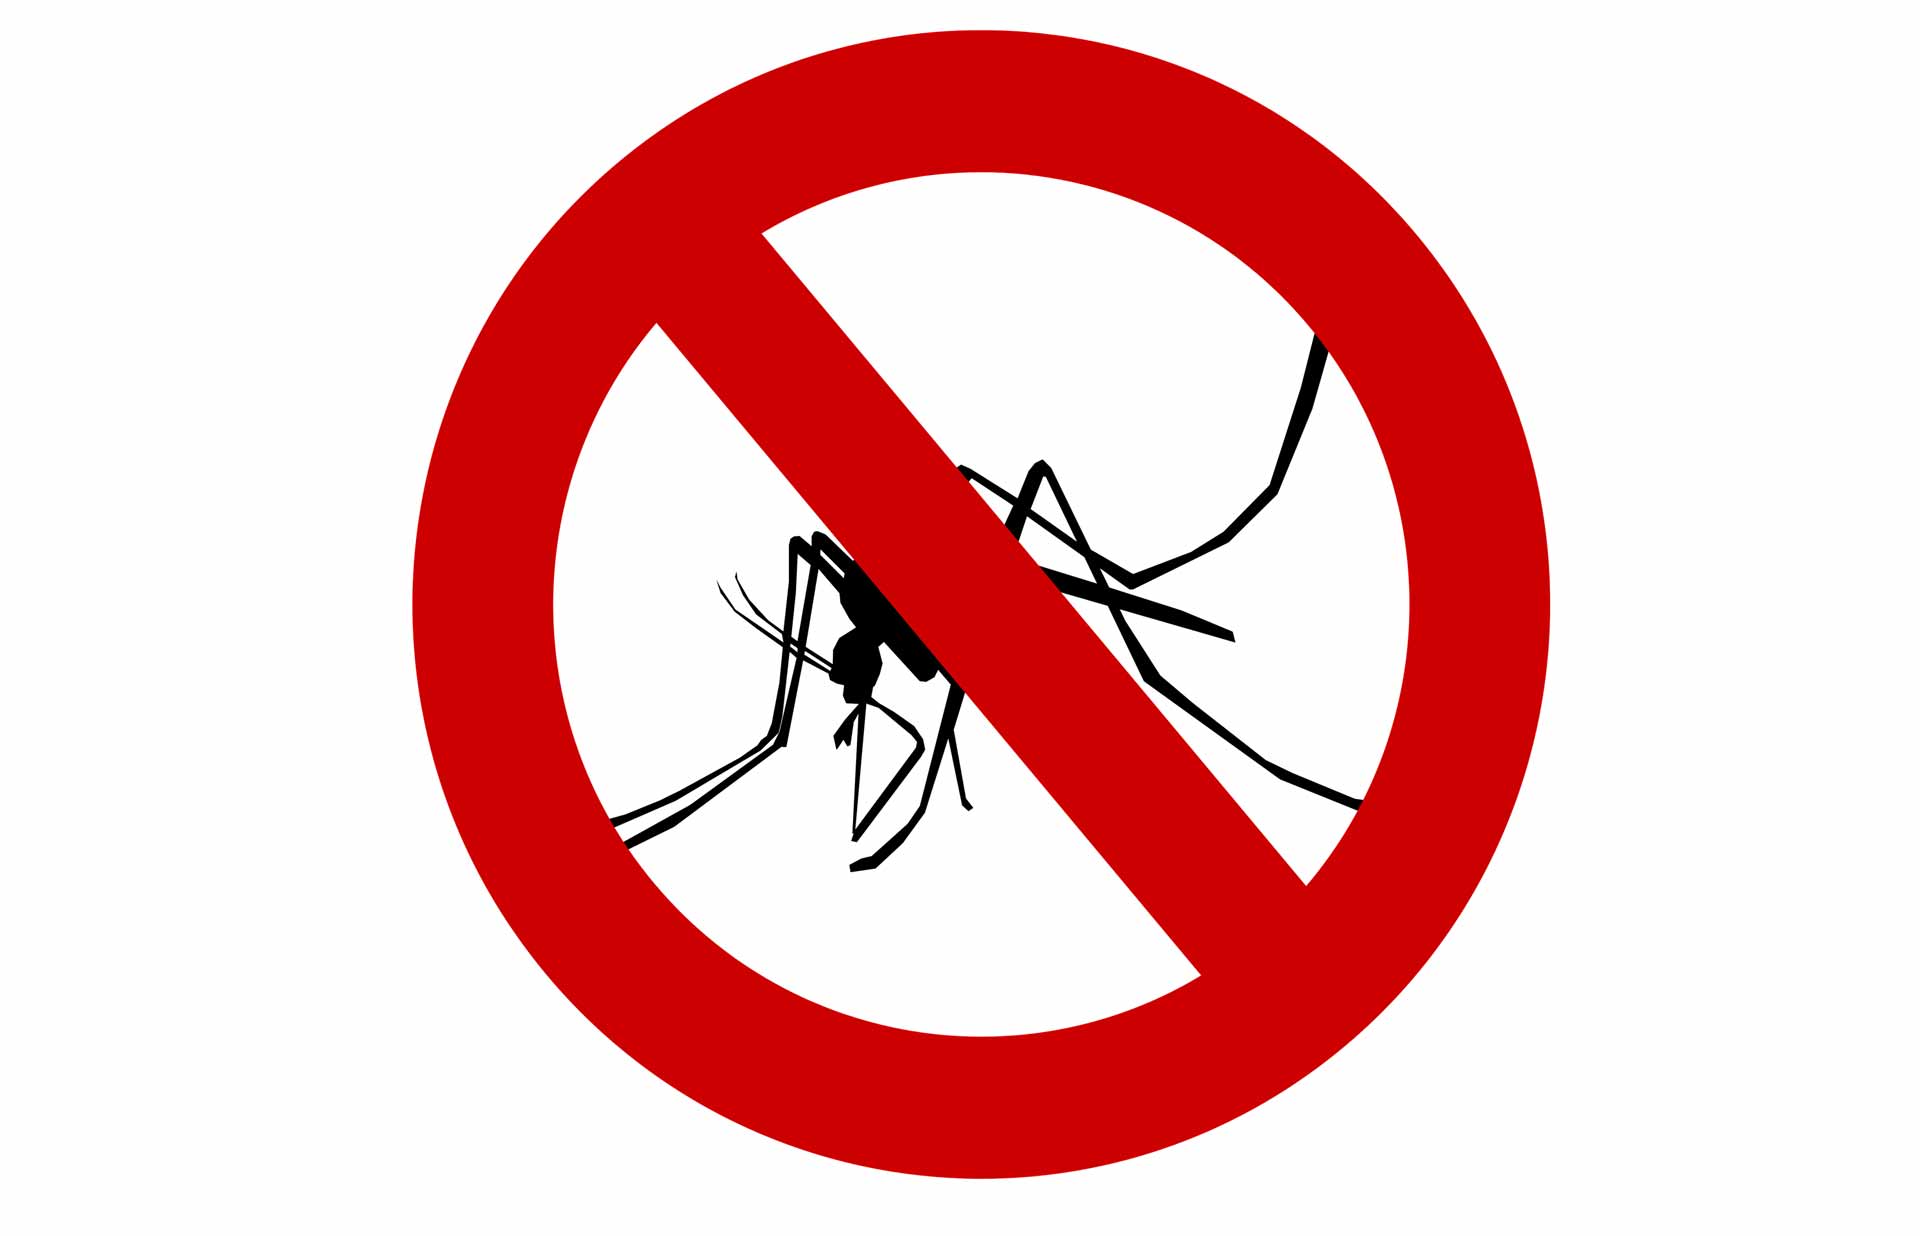 Prirodna sredstva protiv komaraca